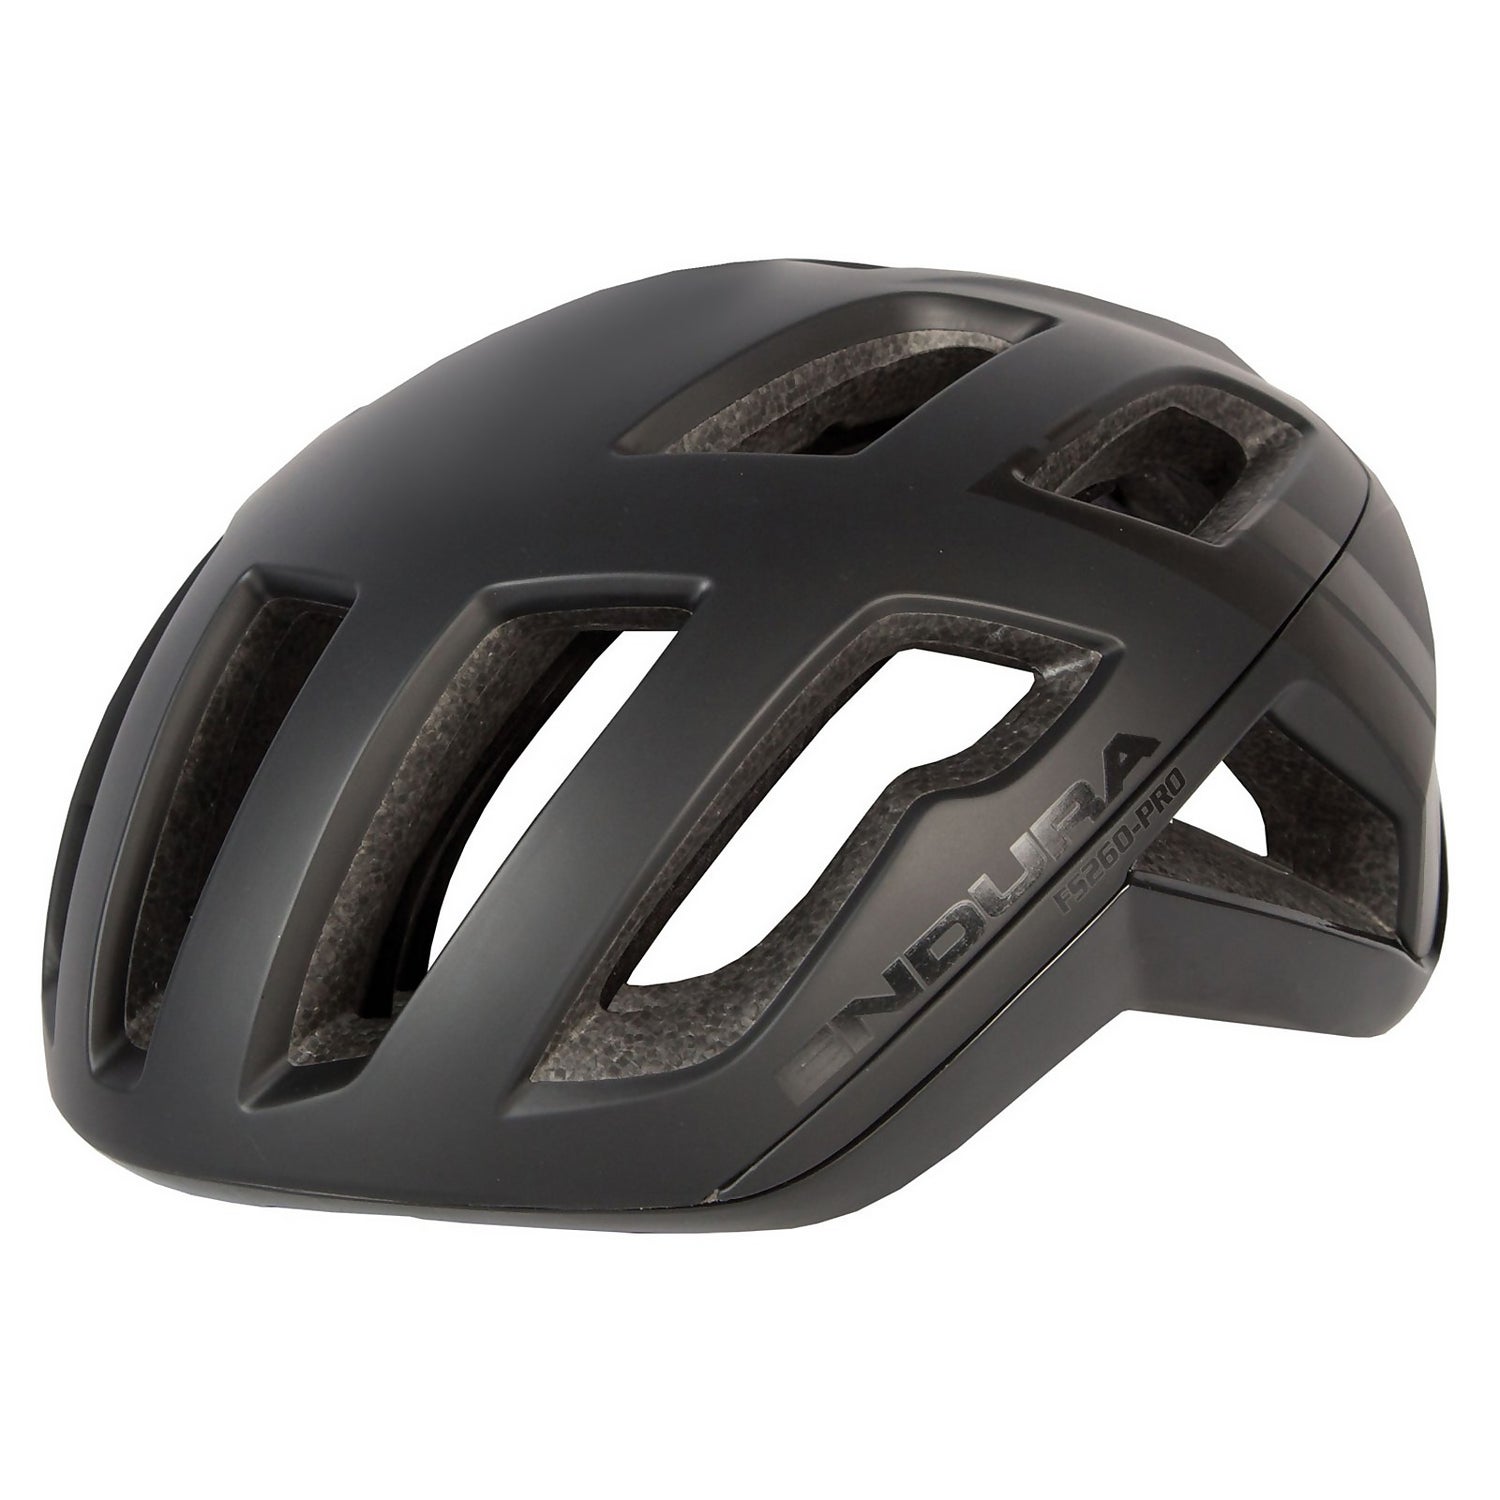 Men's FS260-Pro Helmet - Black